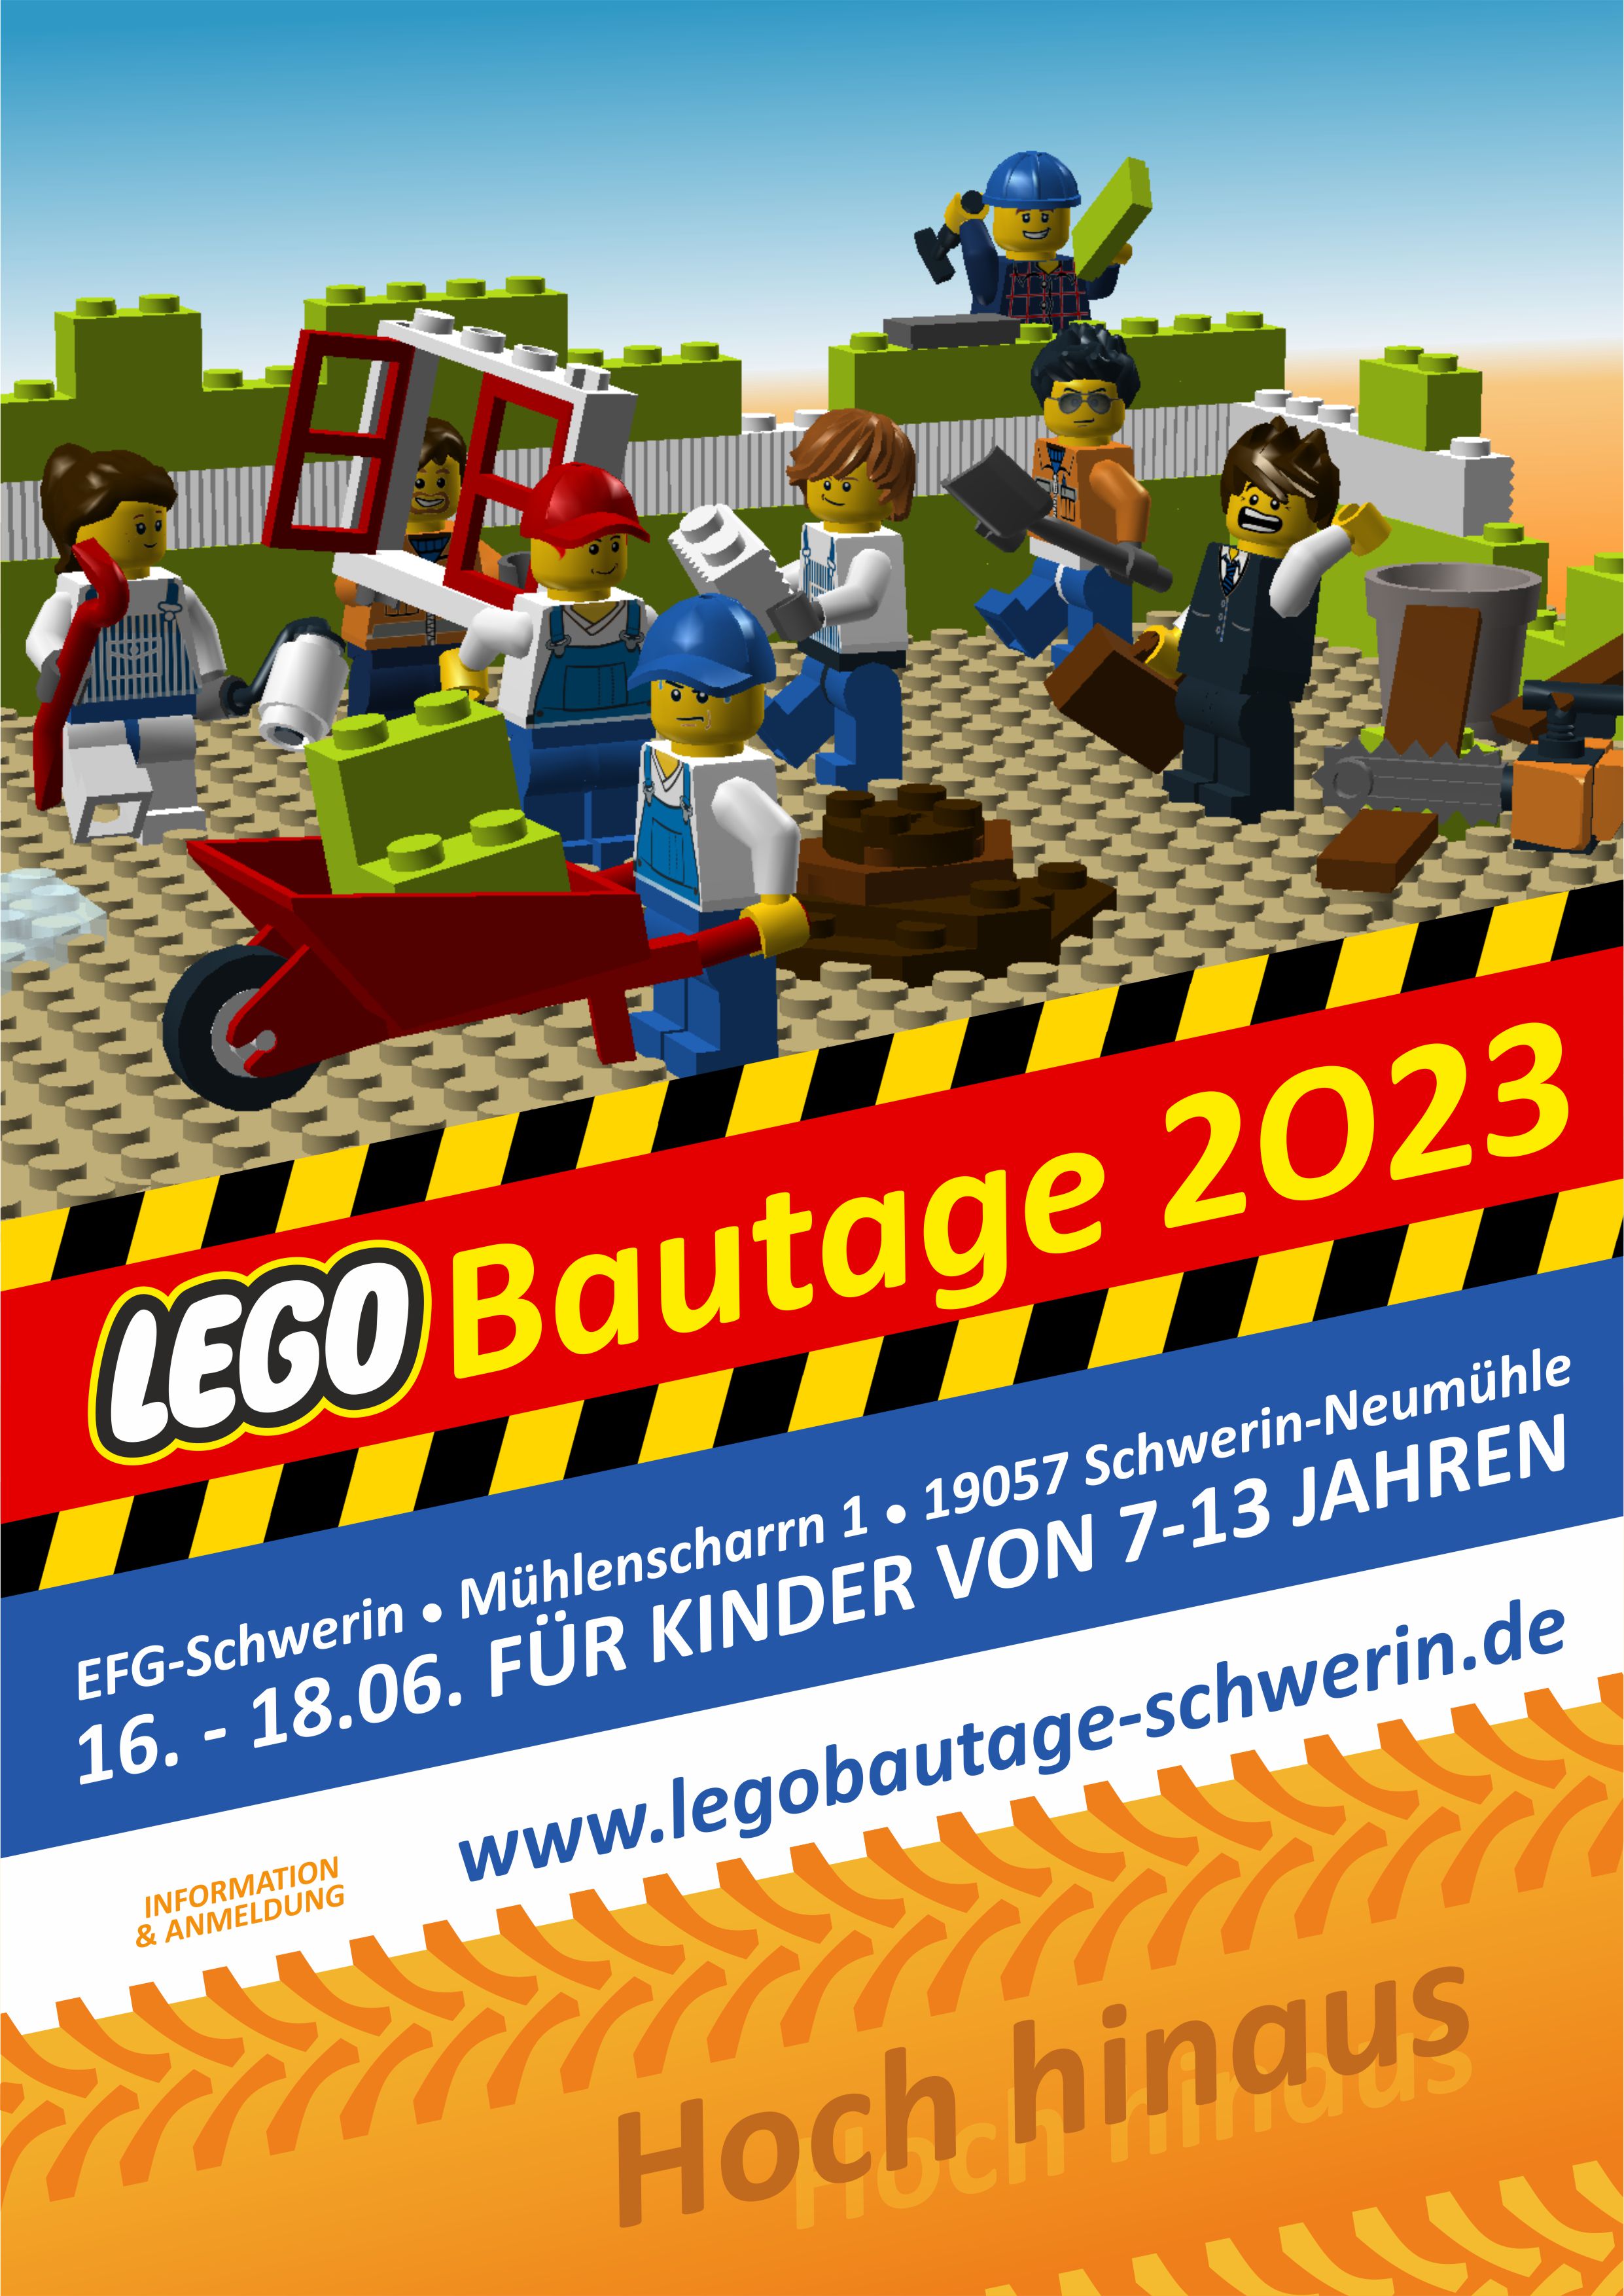 Legobautage 2023